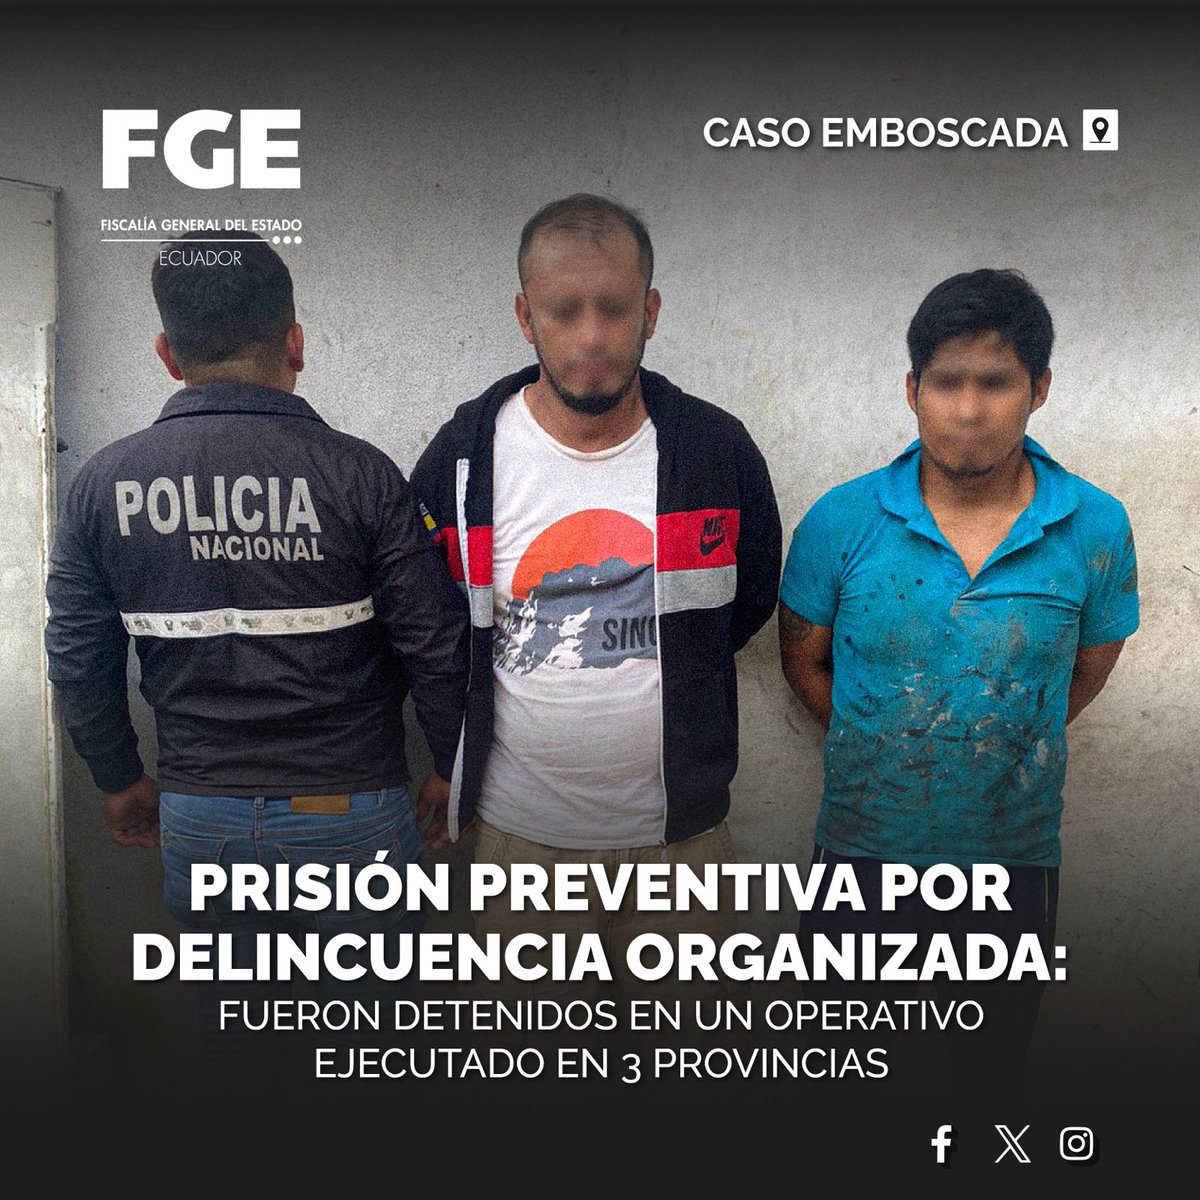 #ATENCIÓN | #CasoEmboscada: #FiscalíaEc procesa a 7 detenidos por #delincuenciaorganizada. Los involucrados tendrían relación con el DGO 'Los Fatales'.

Detalles ⬇️

🌐 acortar.link/pnScRq